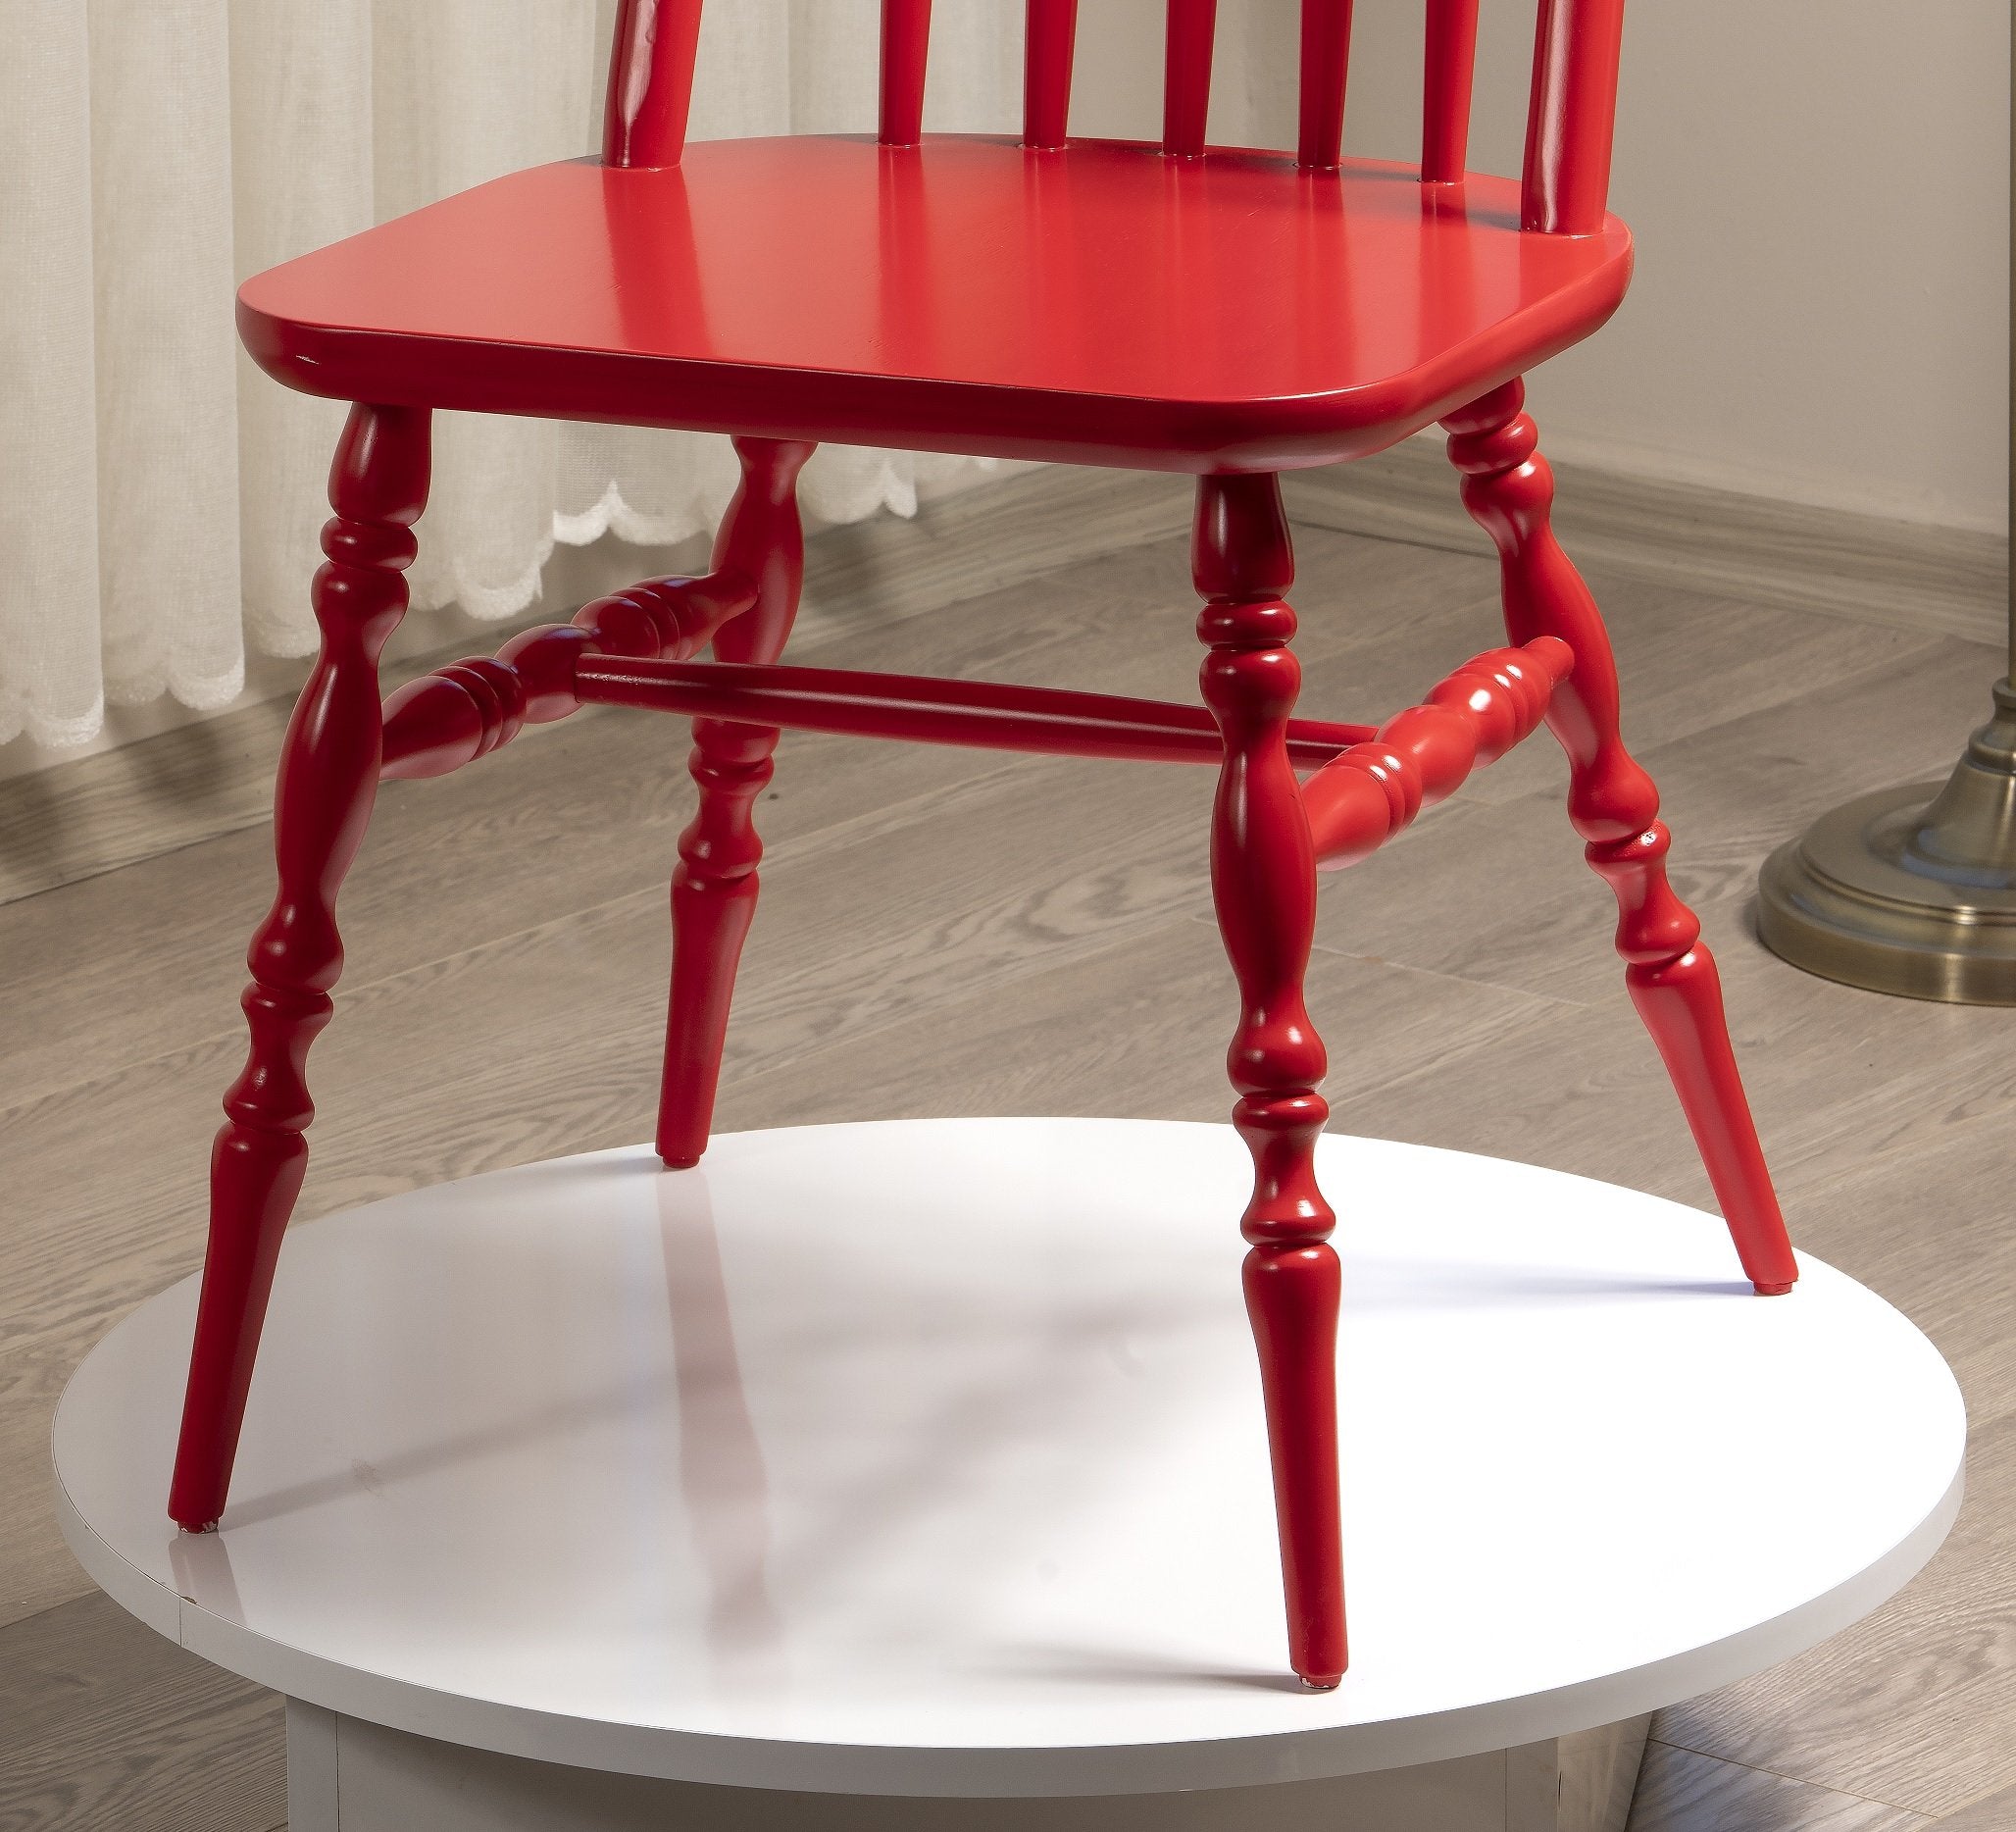 Eiffel Solid Wood Chair - Set of 2 - 36.8" H x 17.3" W x 18.5" D - Decorotika